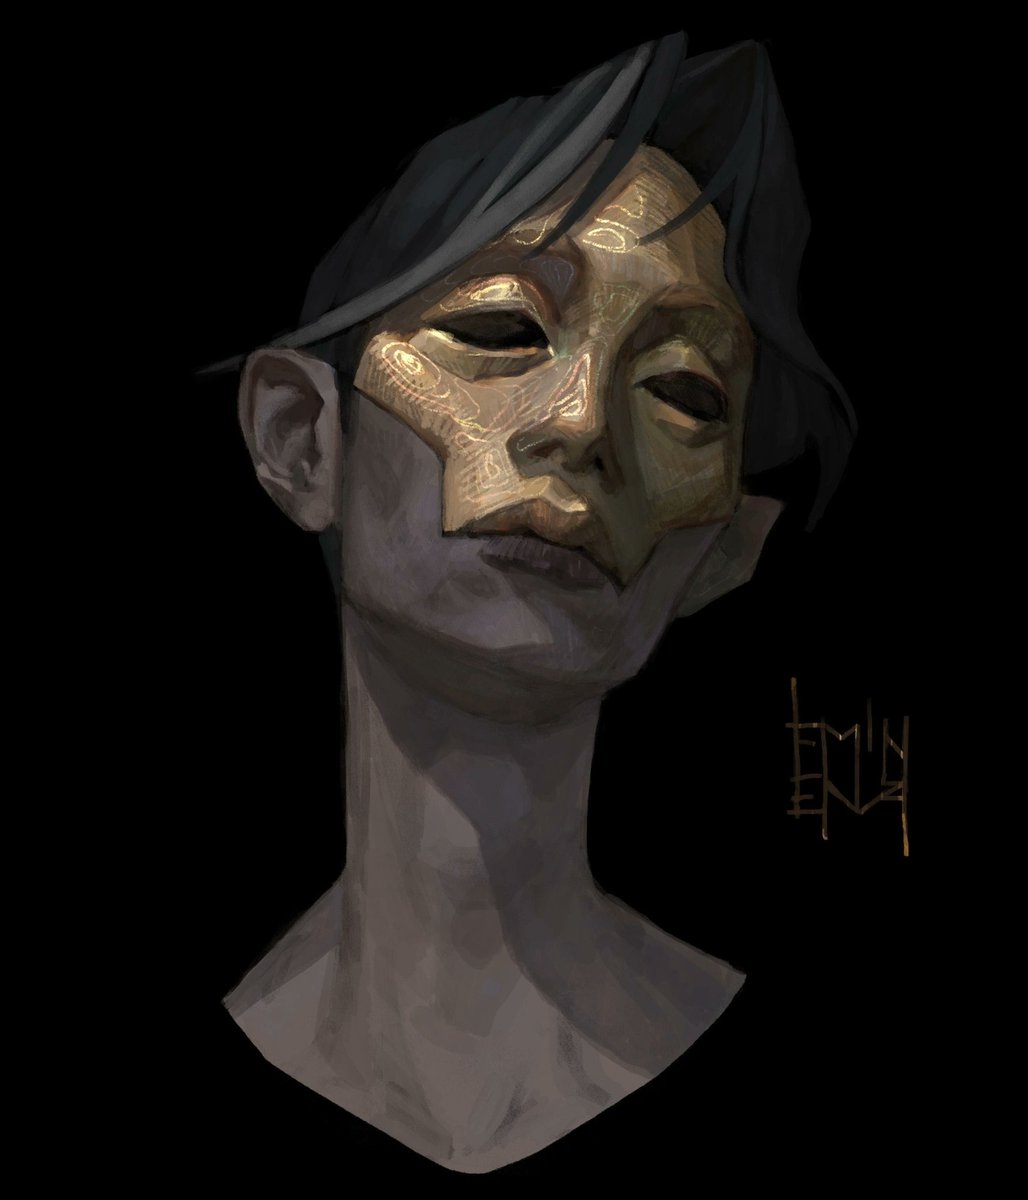 「masks 」|Emilyenaのイラスト